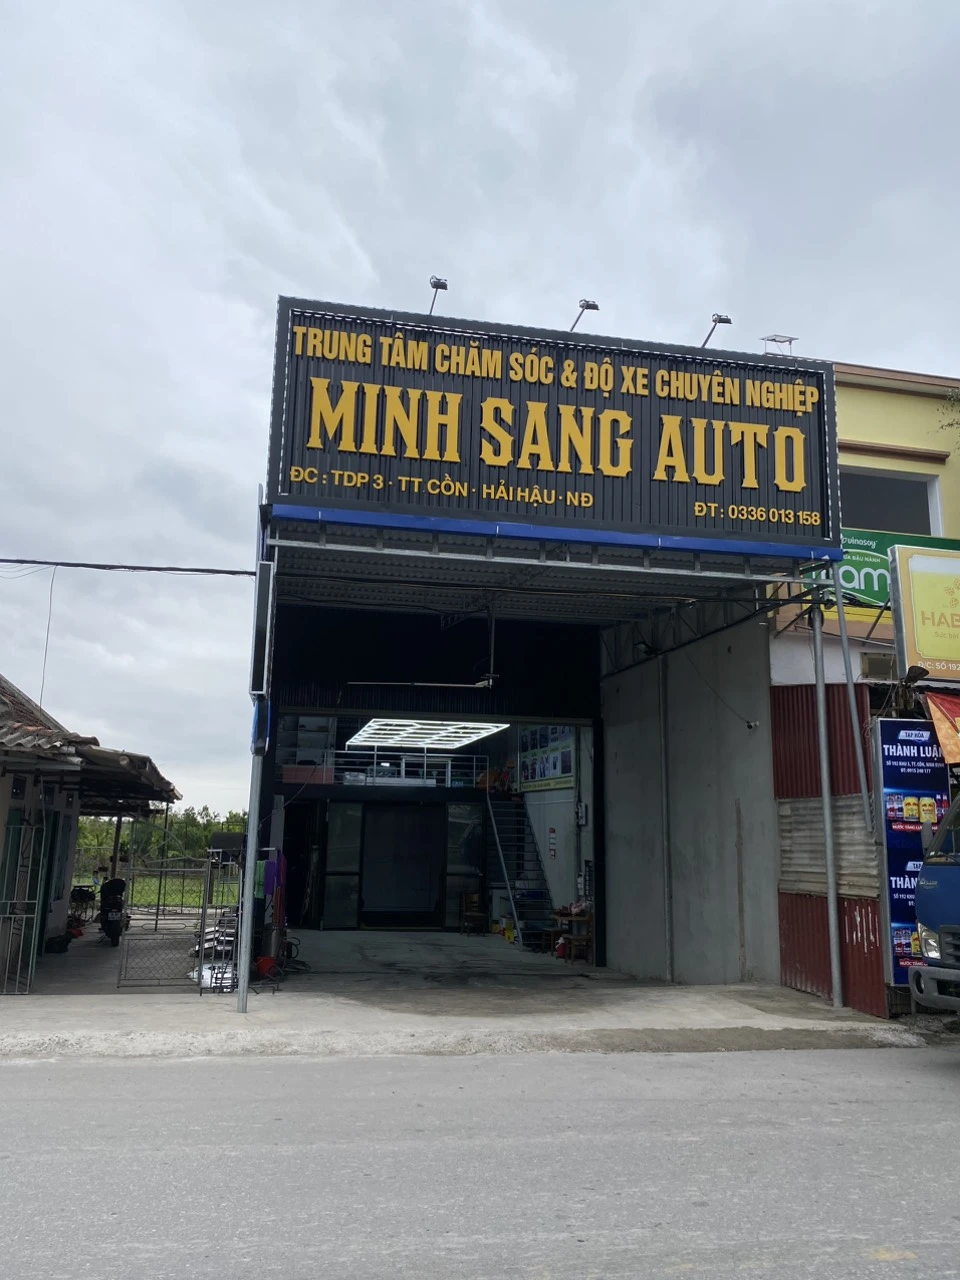 Minh Sang Auto